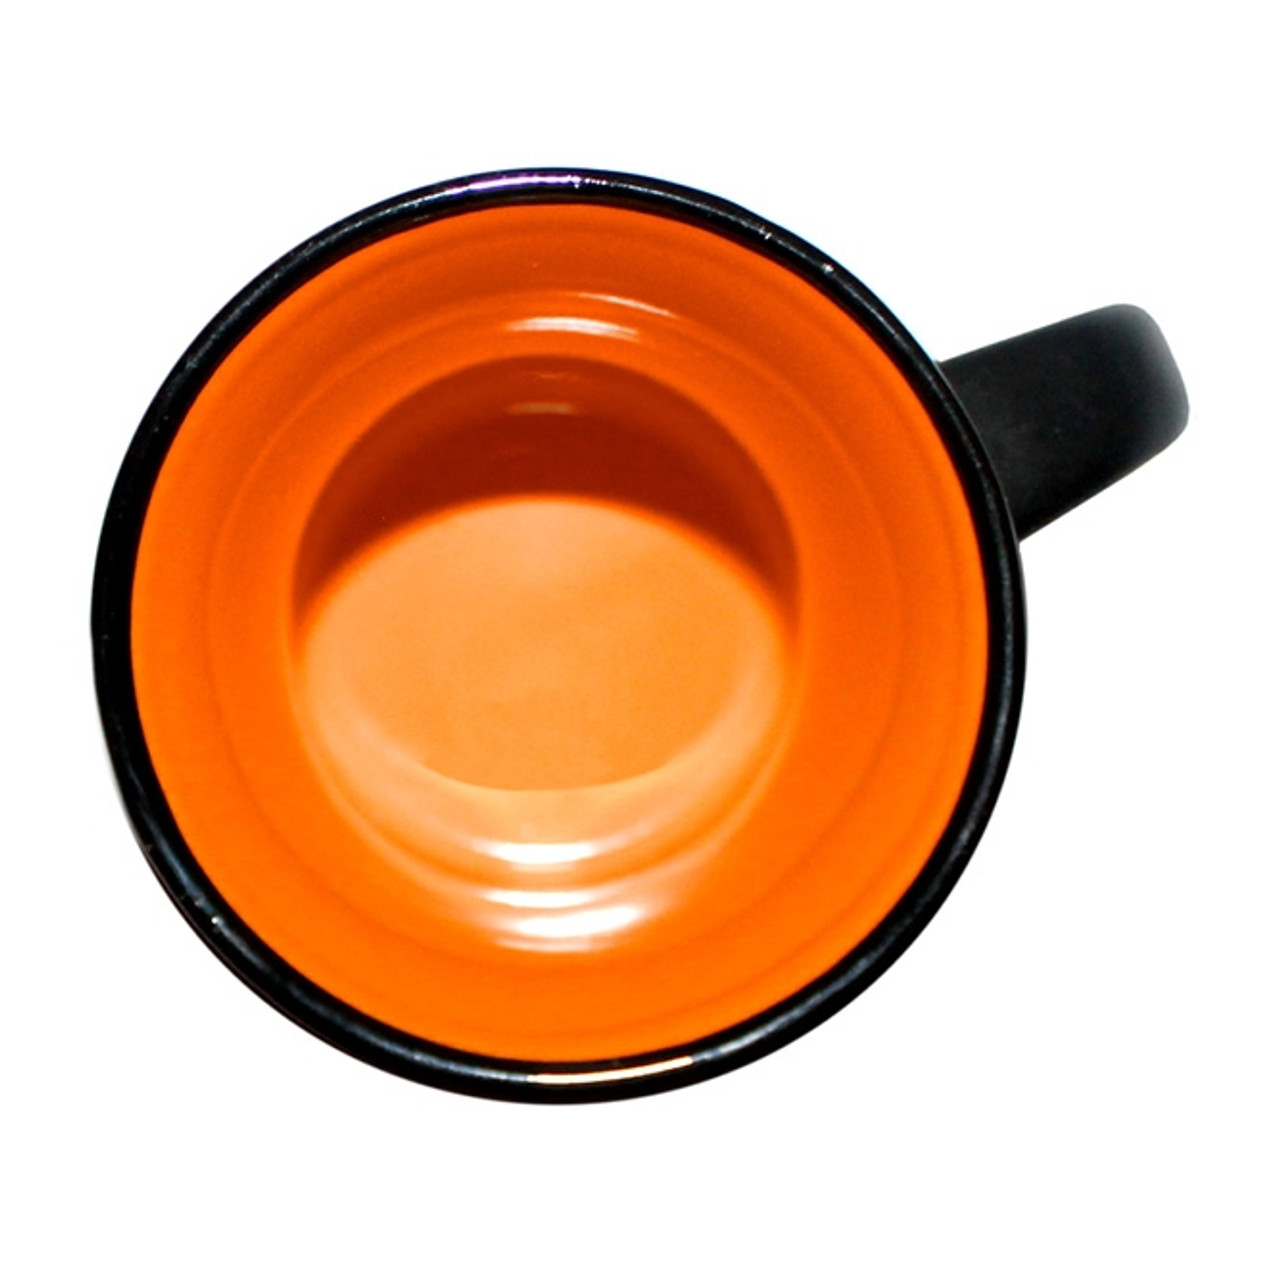 Capital Teas Mug - Black/Orange